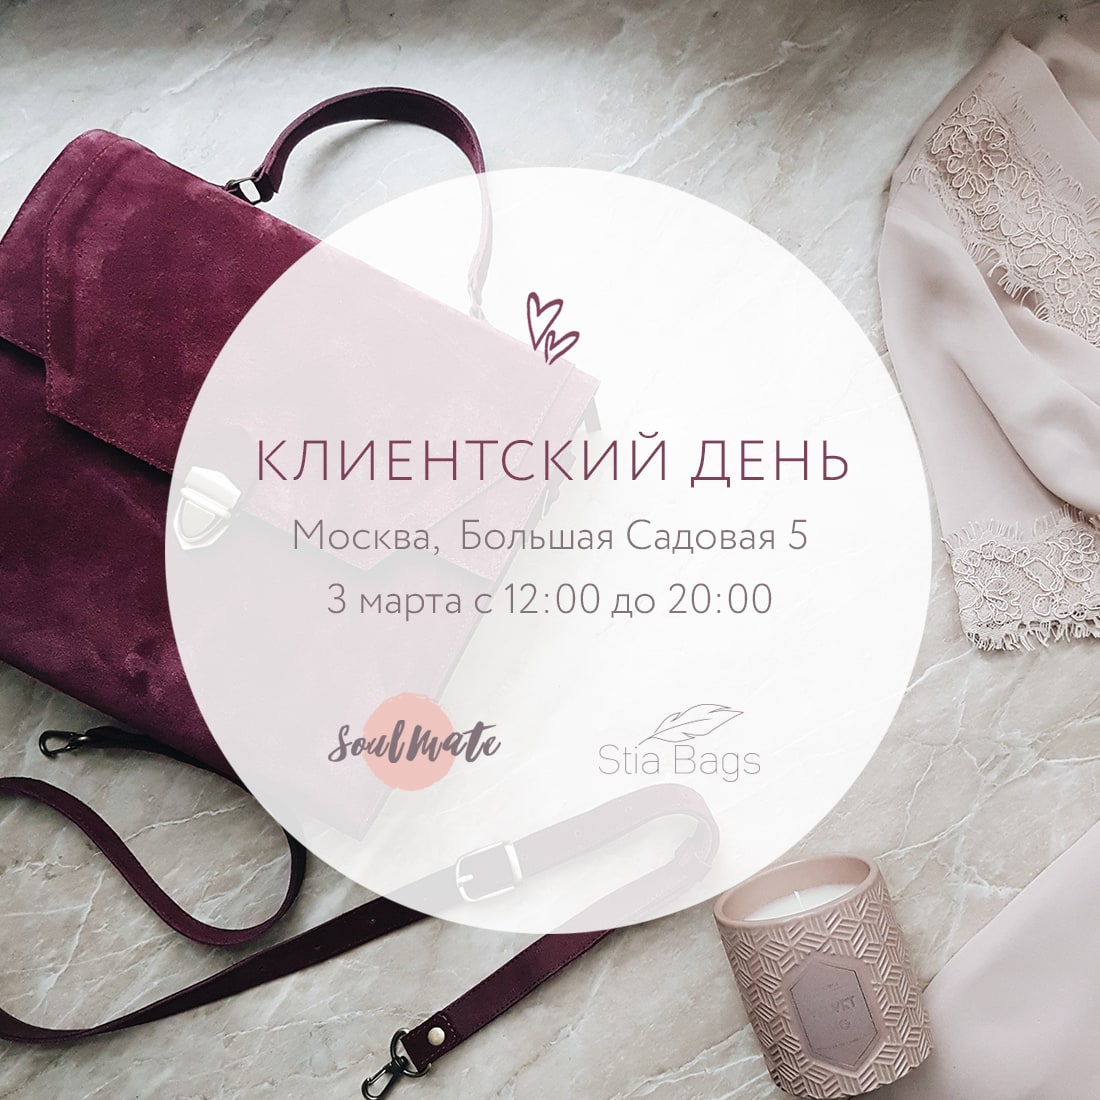 Клиентский день Stia Bags в Москве 3 марта